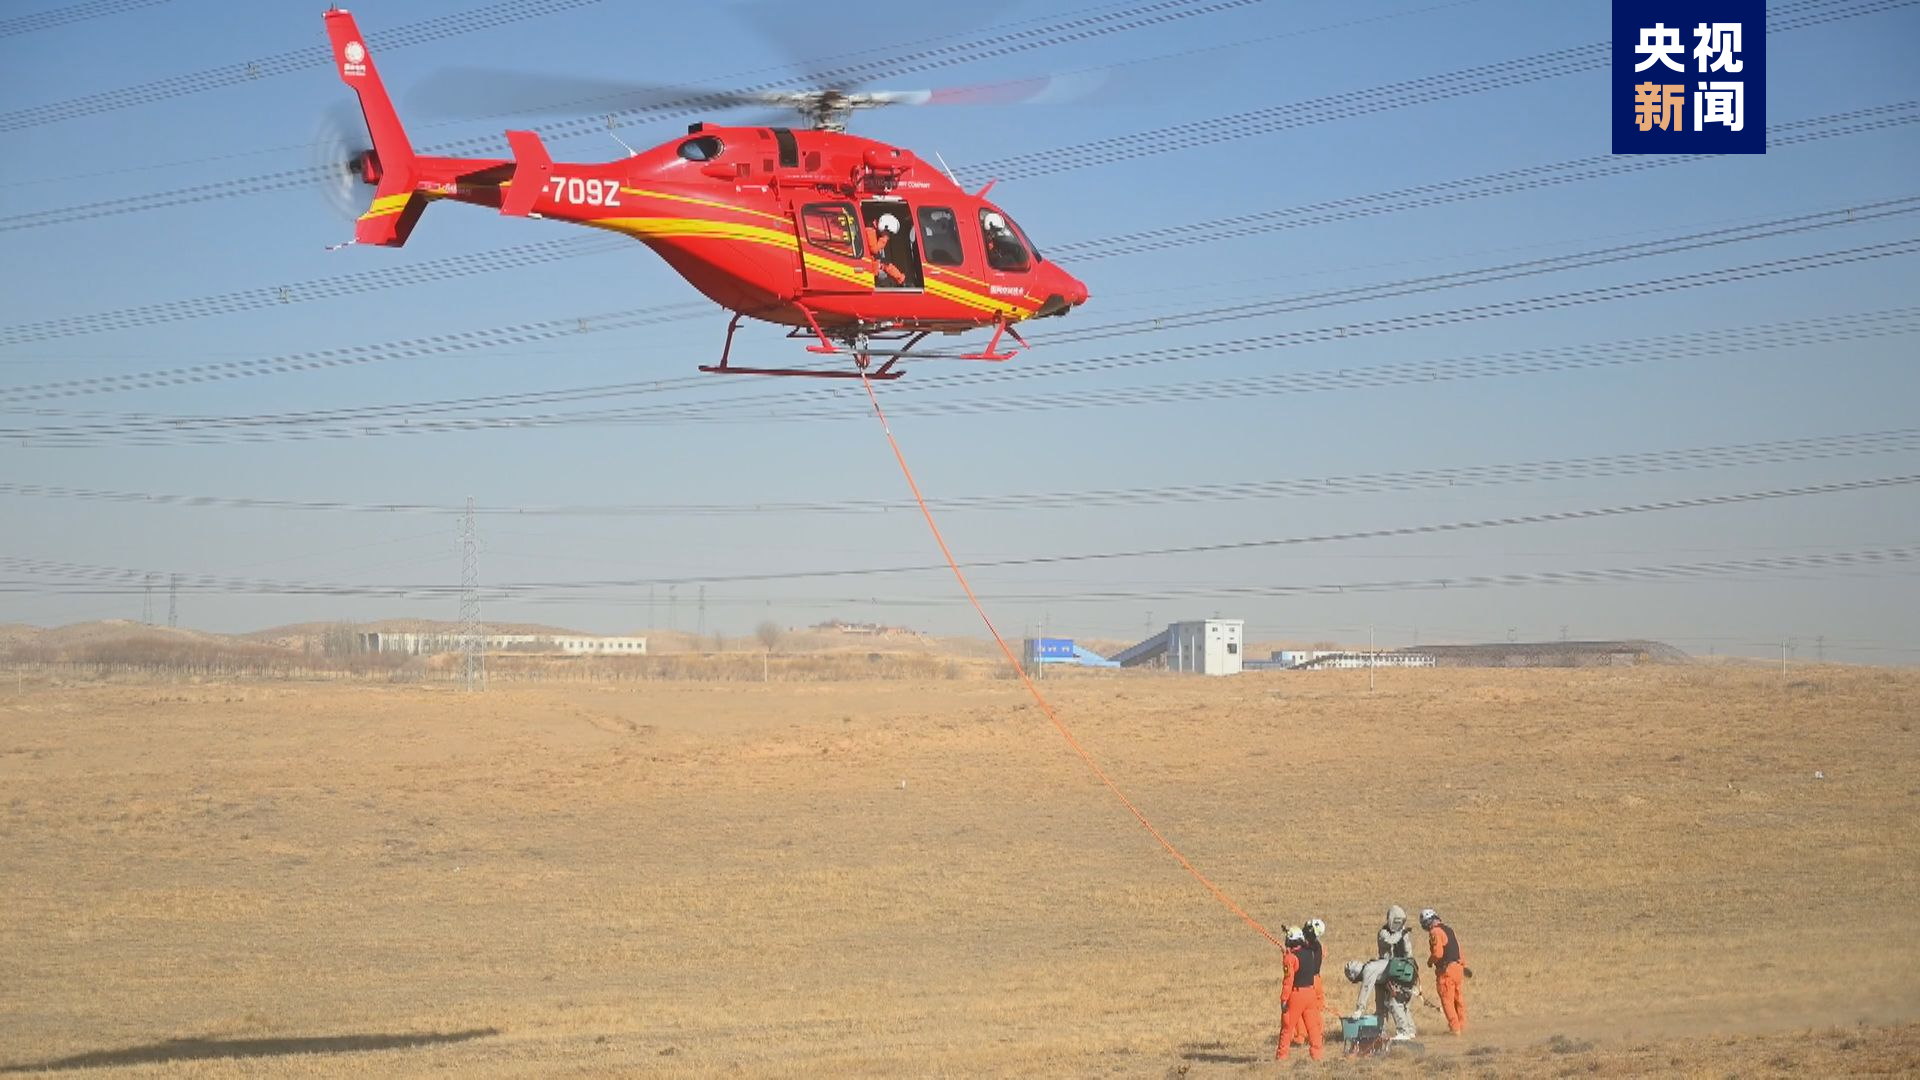 世界首条±660千伏输电线路首次开展直升机带电作业